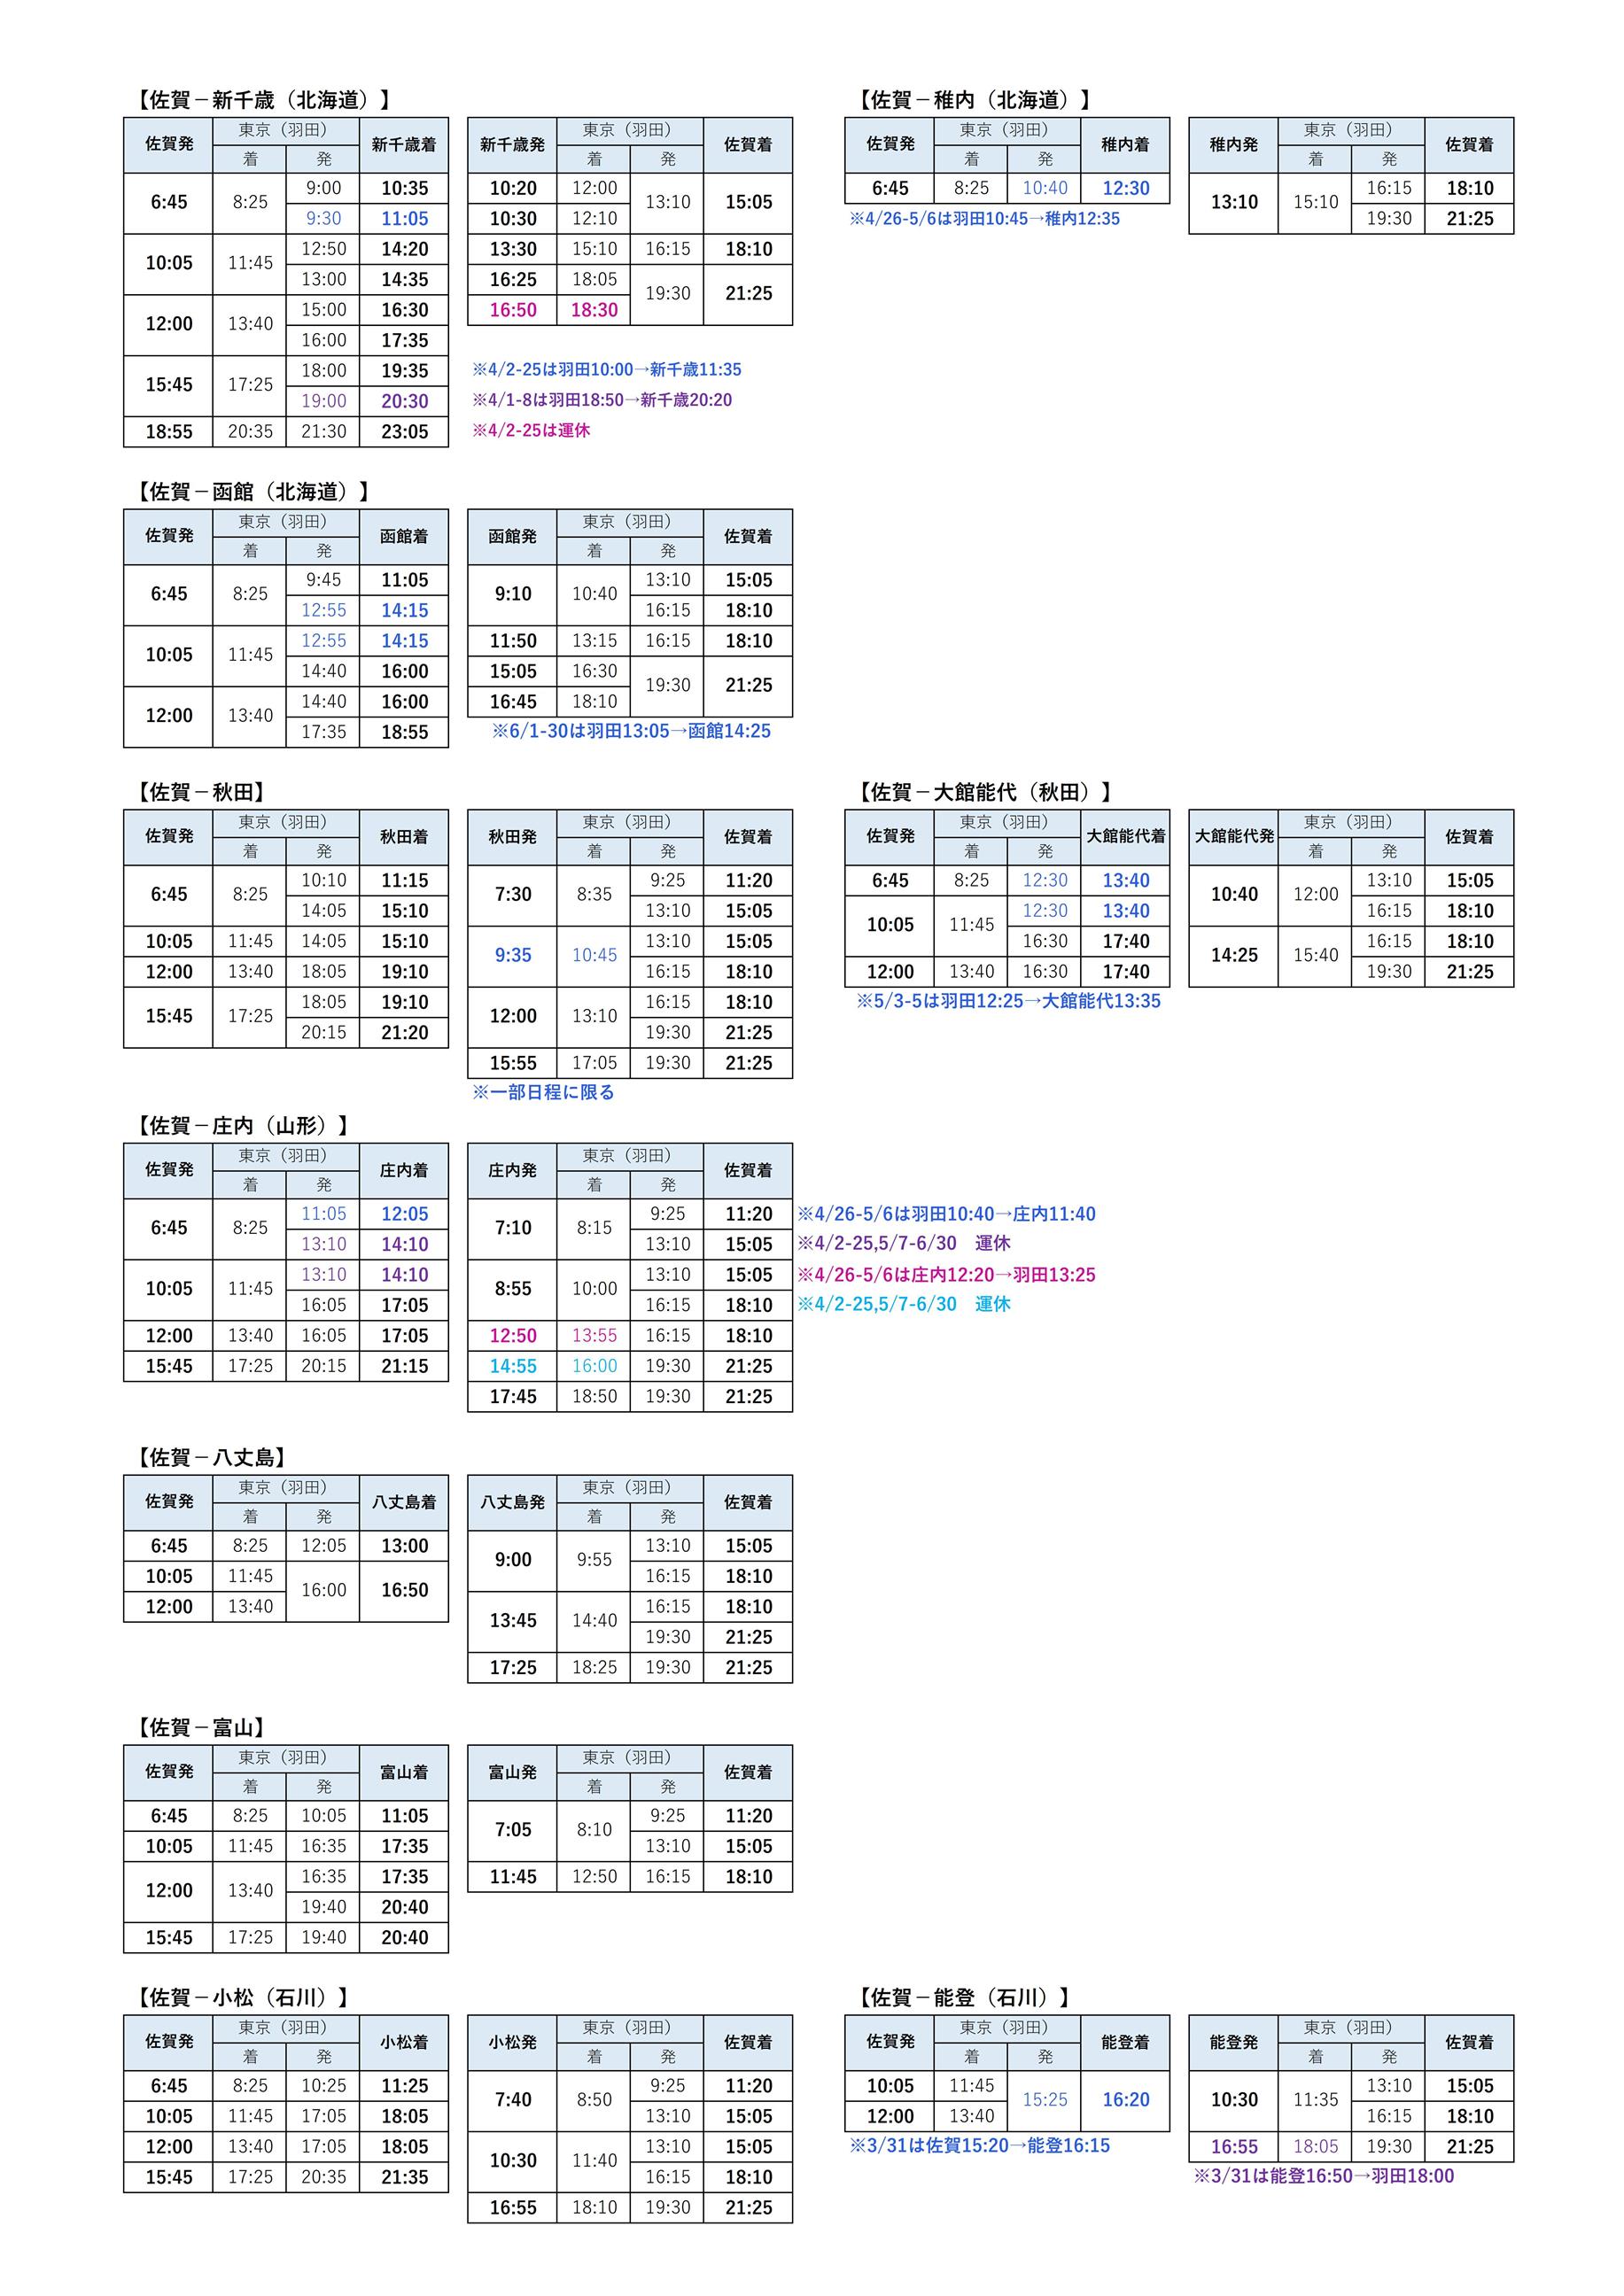 乗継時刻表(3.31～6.30)